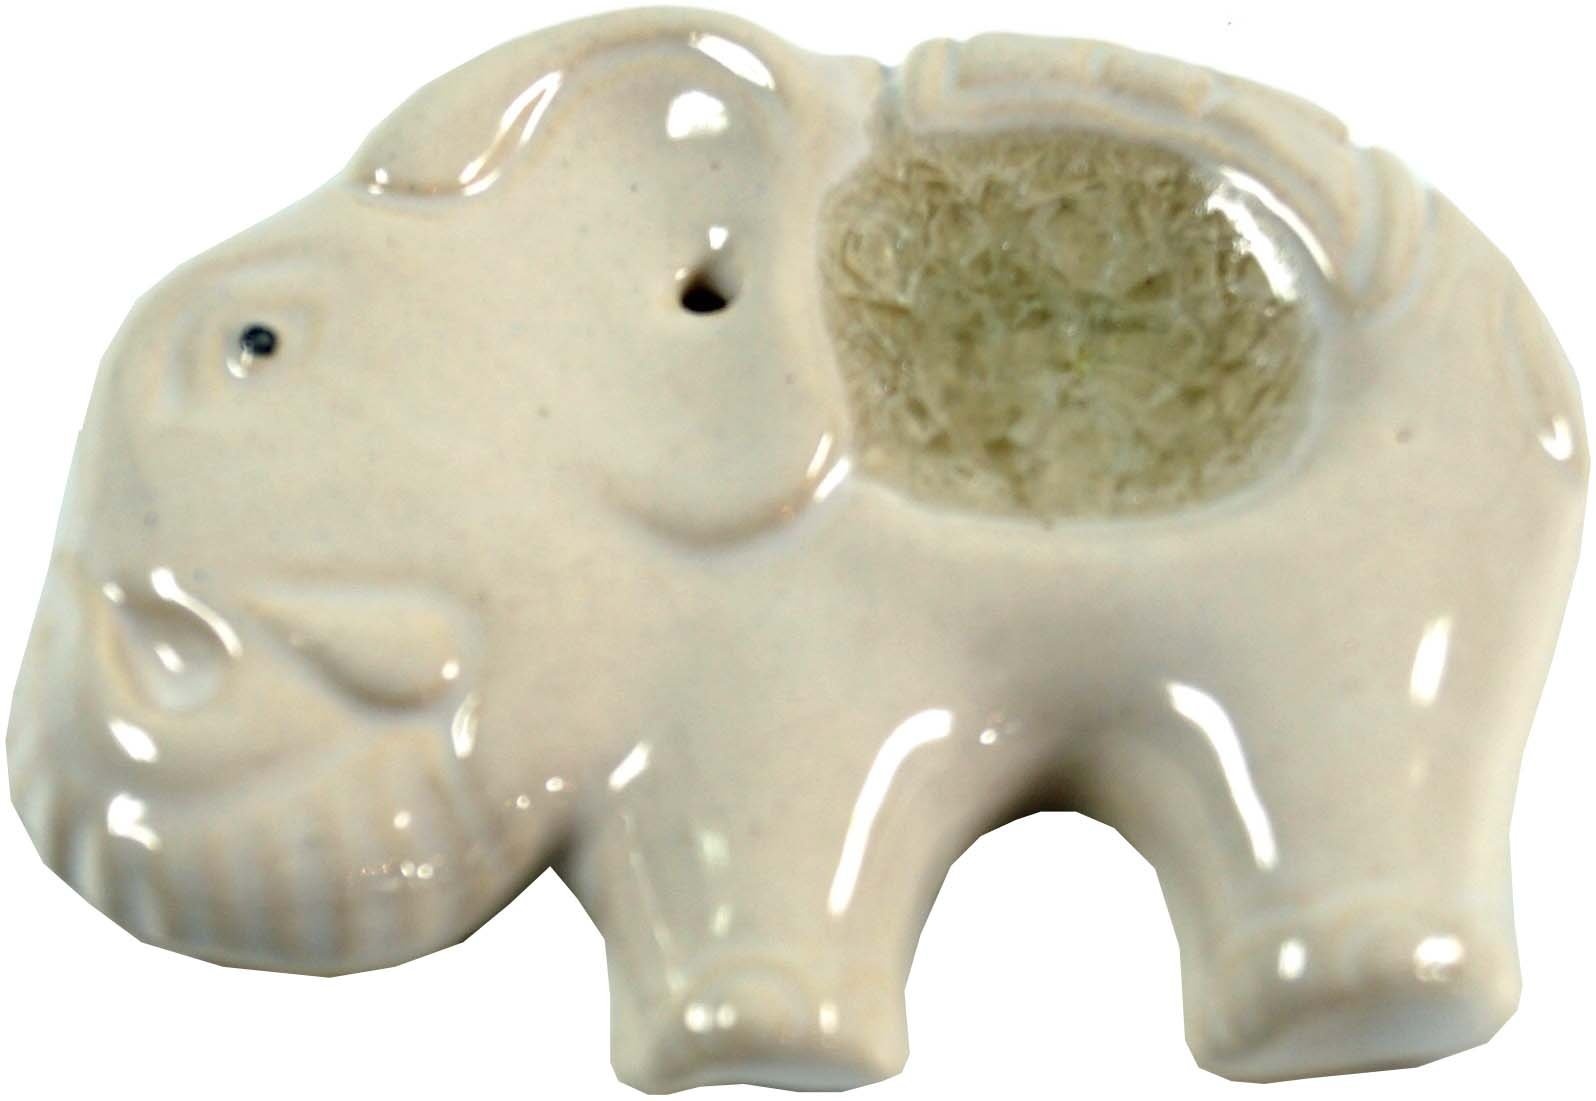 GURU SHOP Räucherstäbchenhalter Elefant aus Keramik Weiß - Modell 4, 6x8x1 cm, Räucherstäbchen Halter